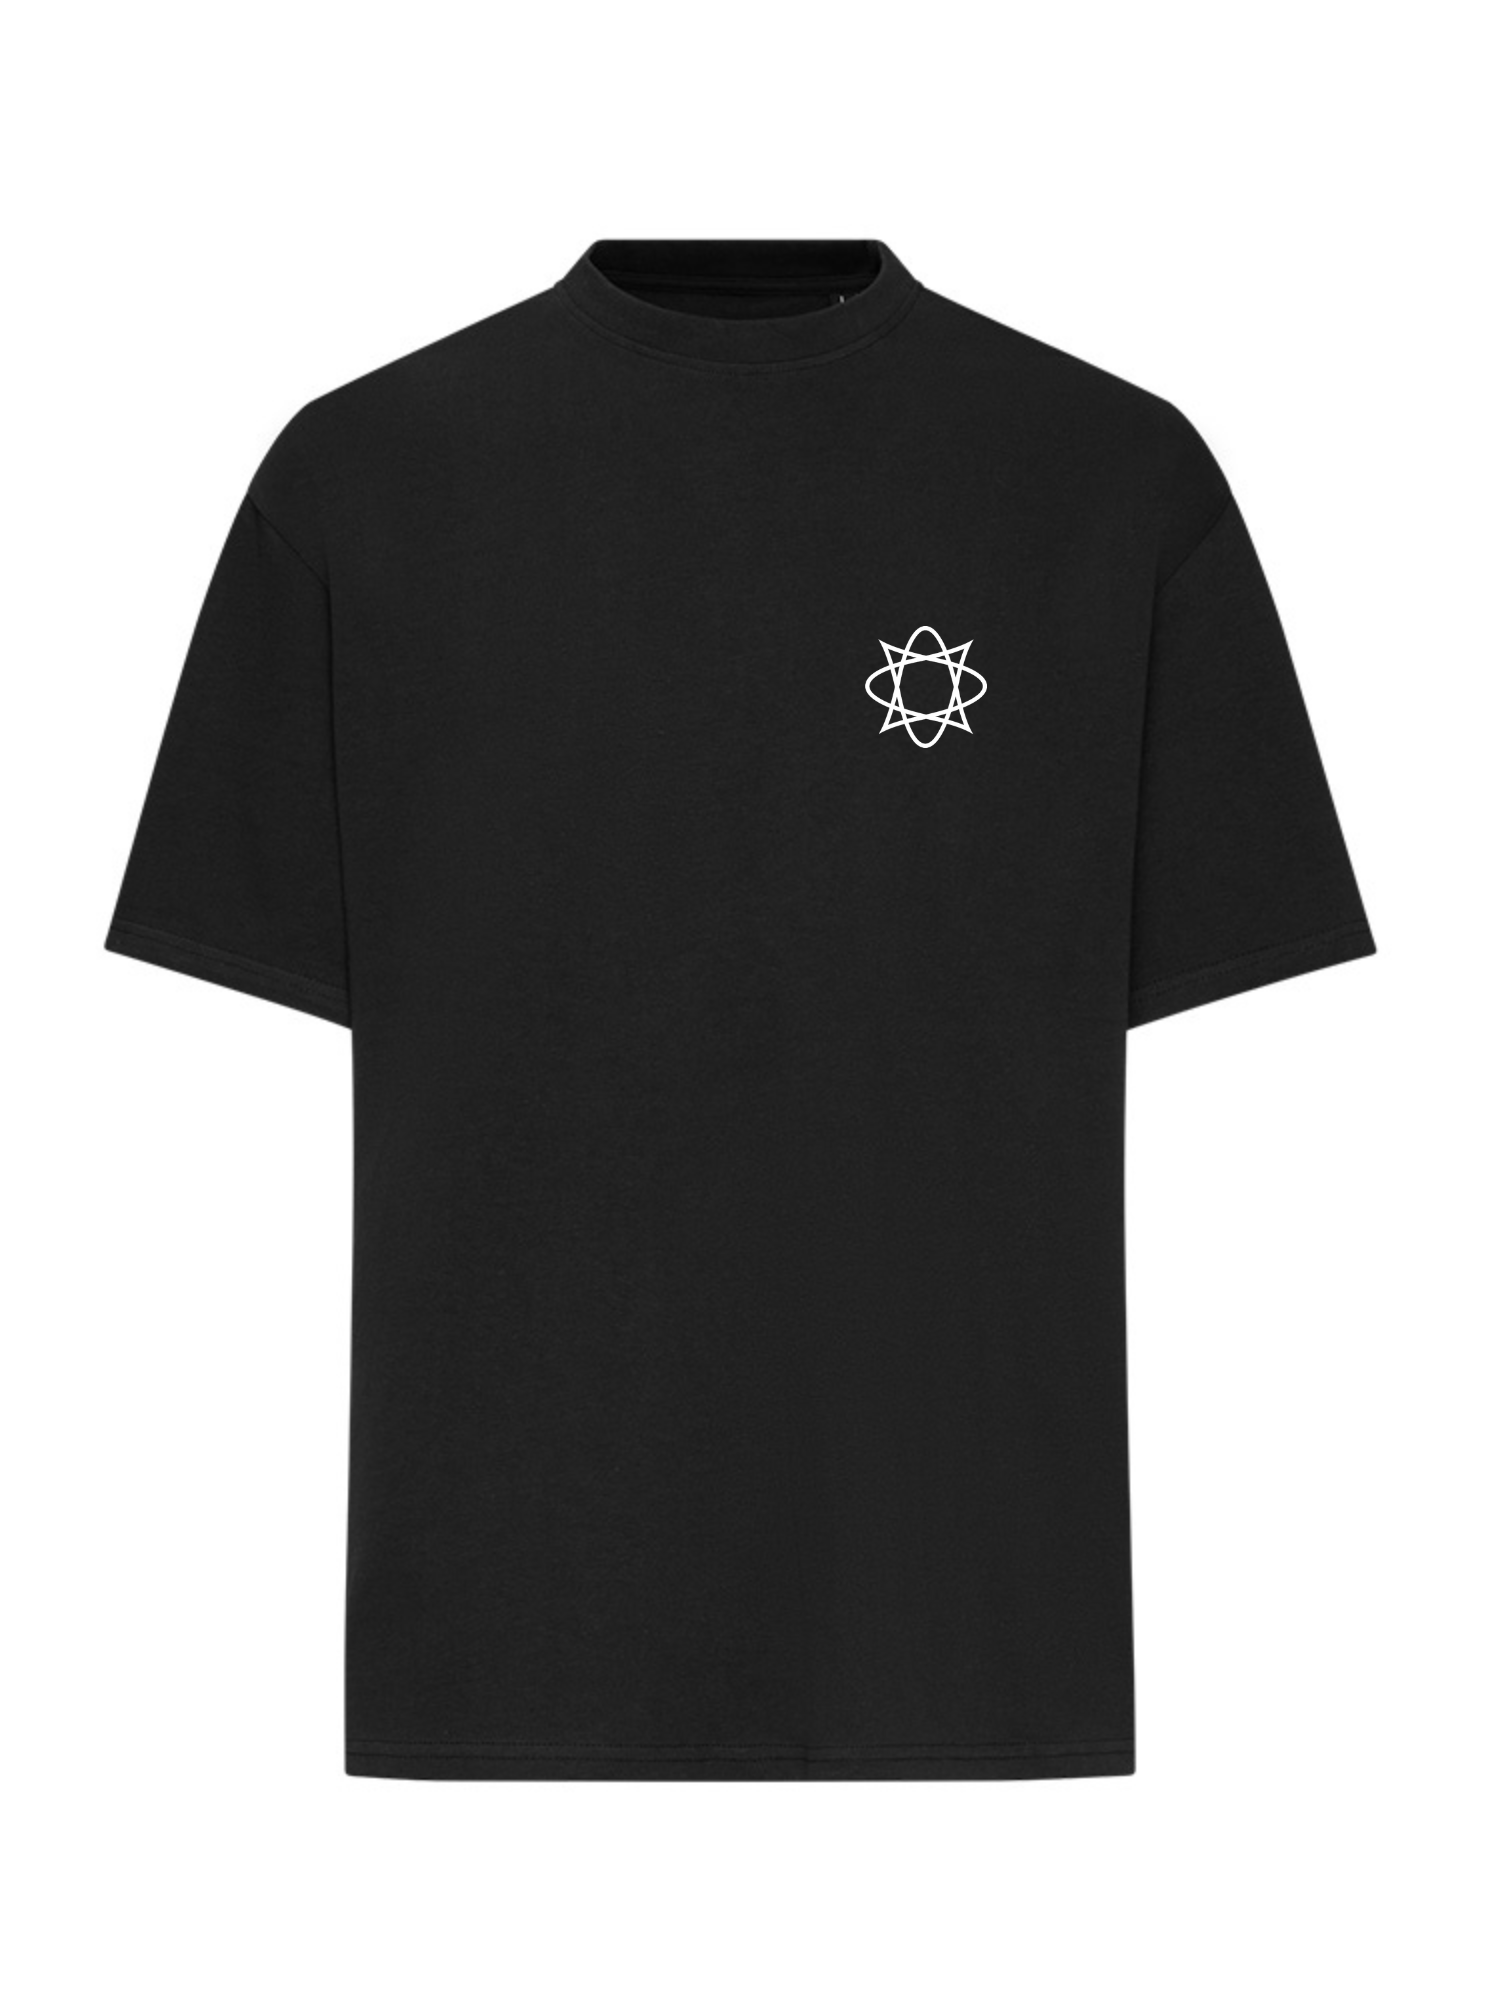 Wirtz - DNA T-Shirt